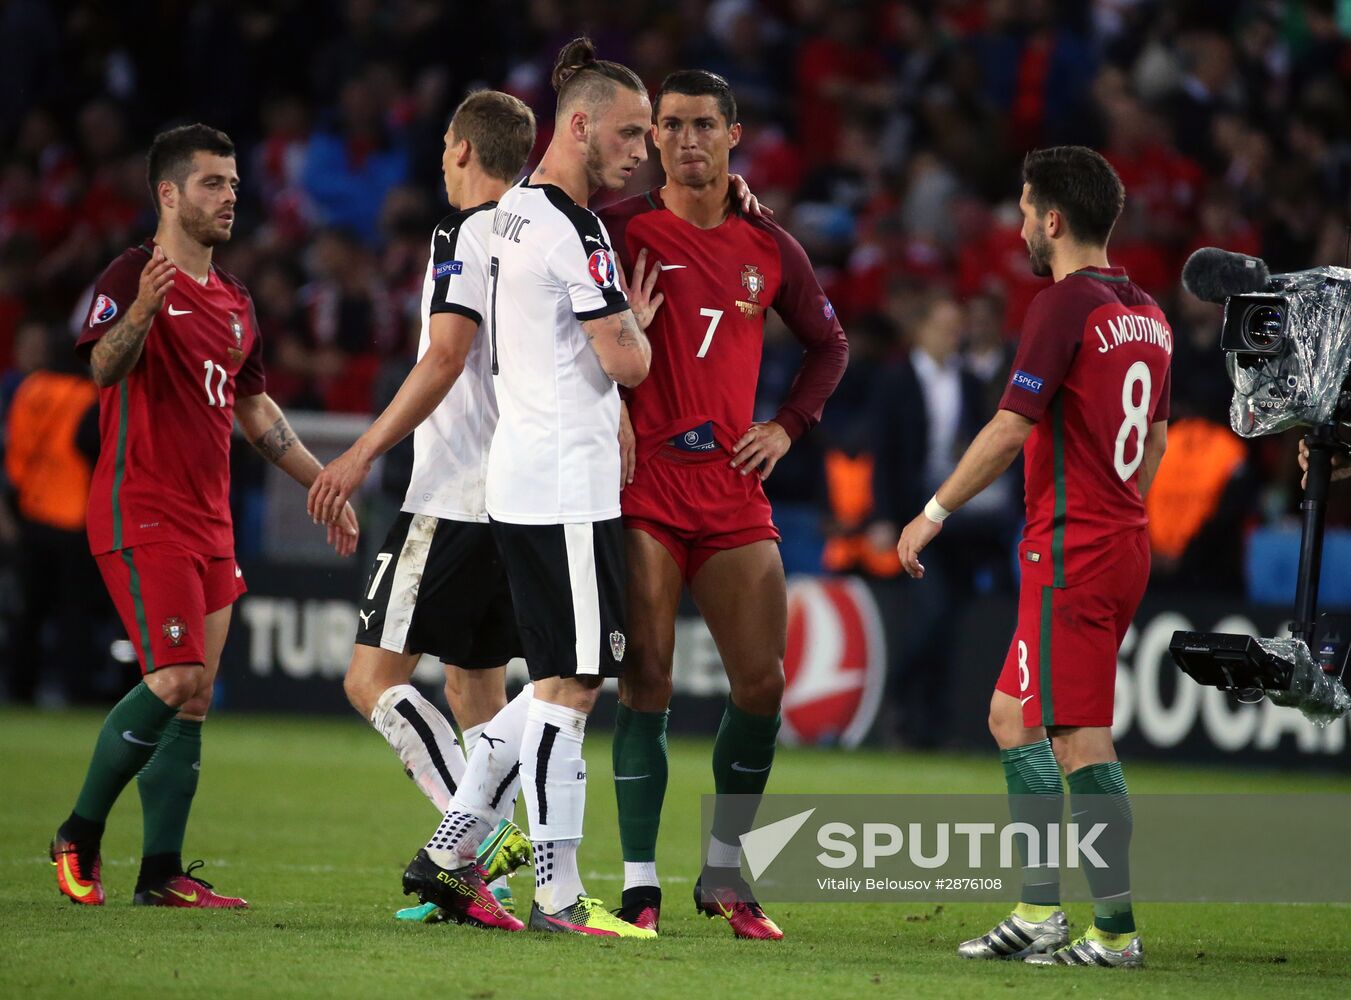 UEFA Euro 2016. Portugal vs. Austria